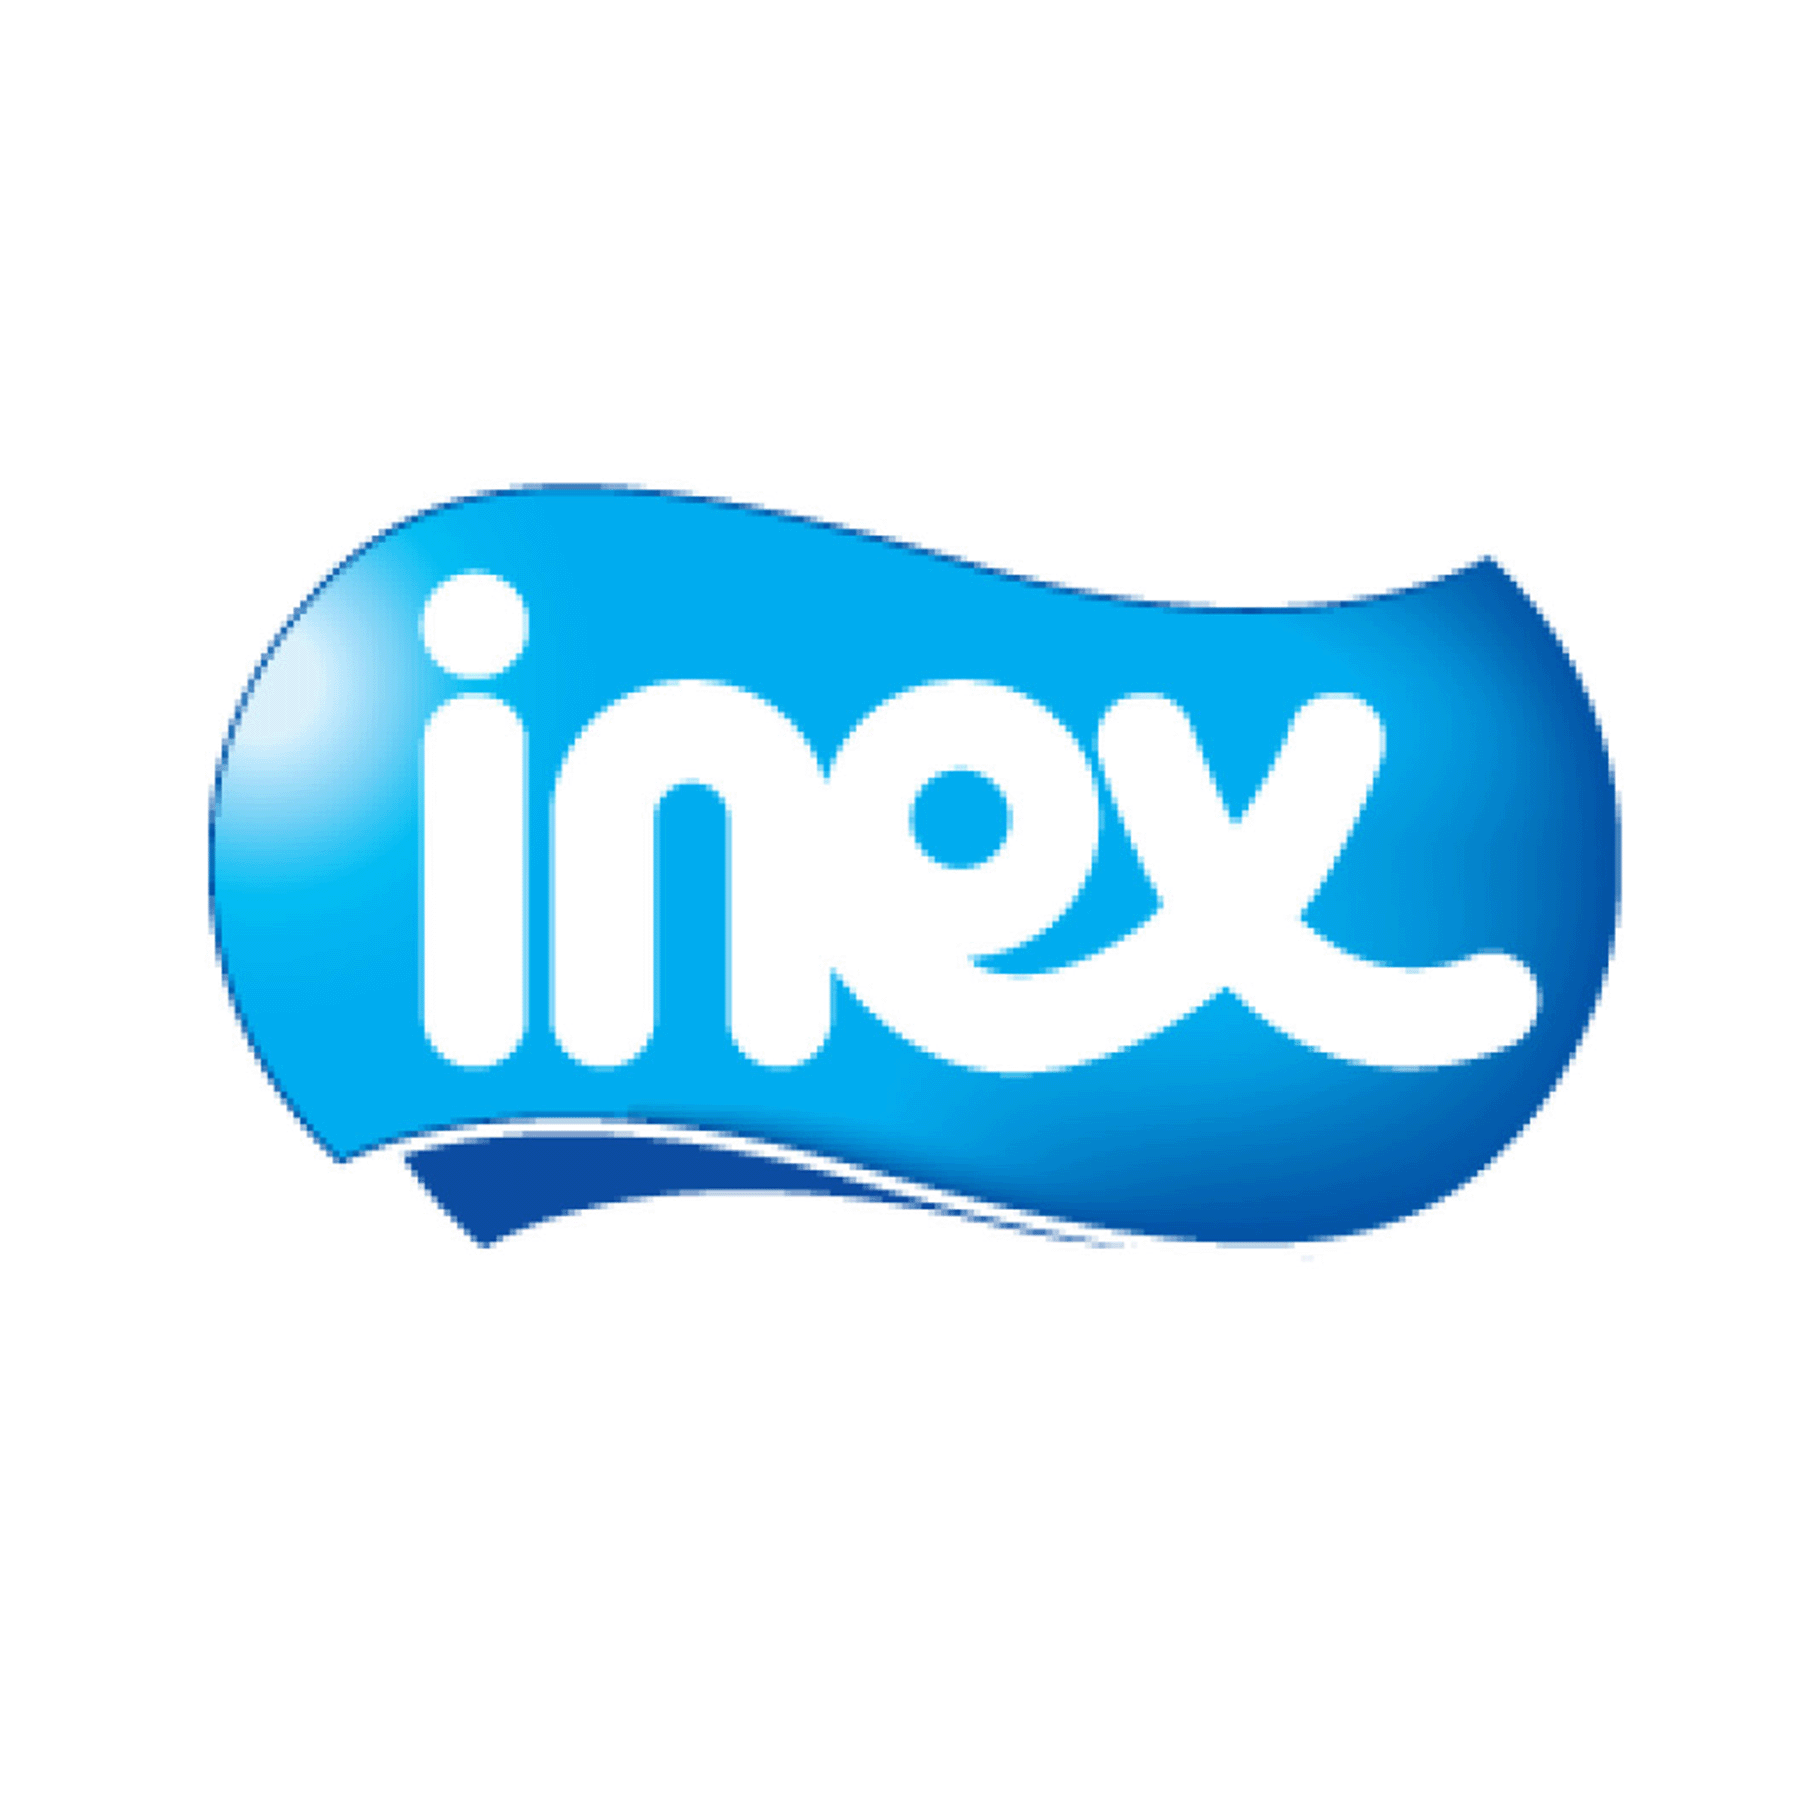 Inex merk